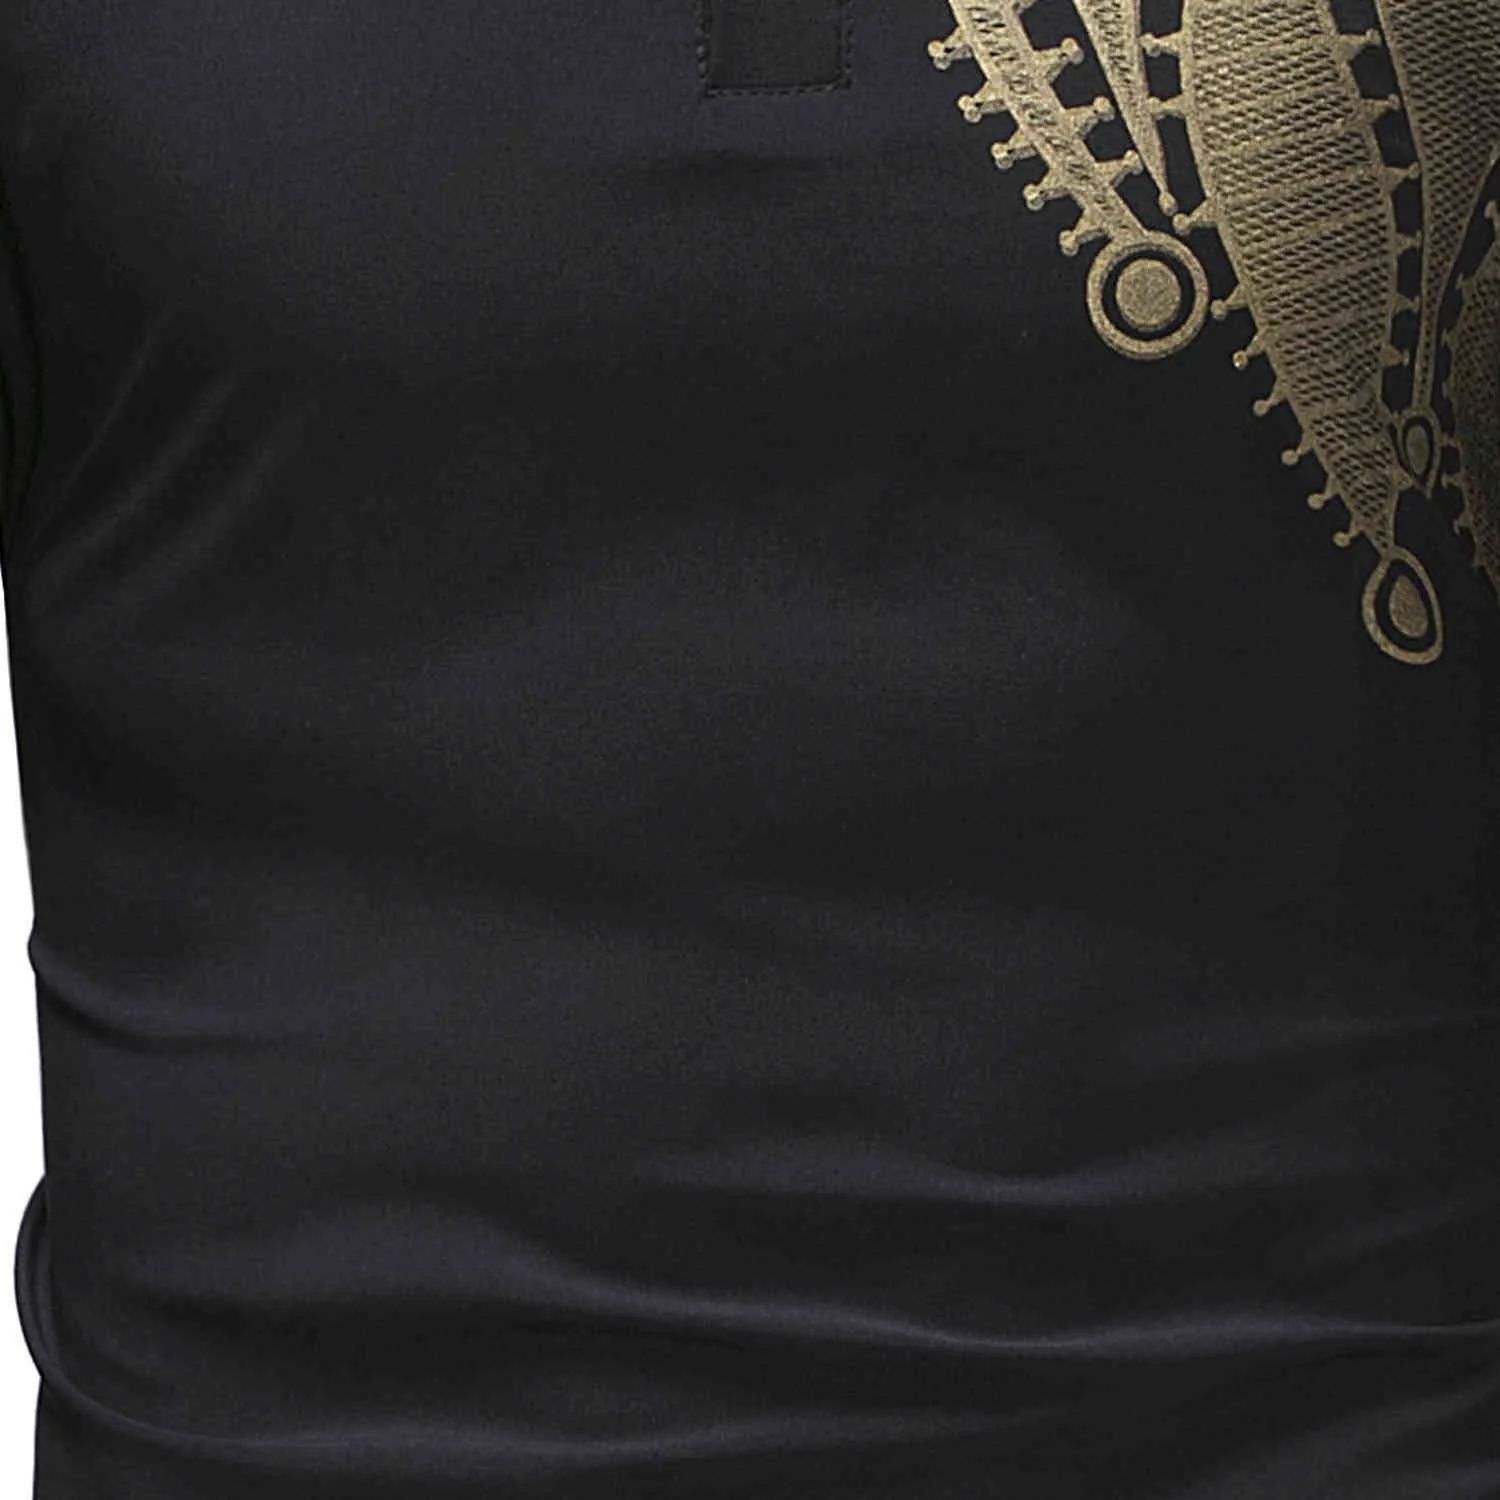 Paisley Black Shirt Men African Style Szczupły szata Męskie odzież Ethic Dashiki Camisas Bazin Tops Print T Shirts 210524201c